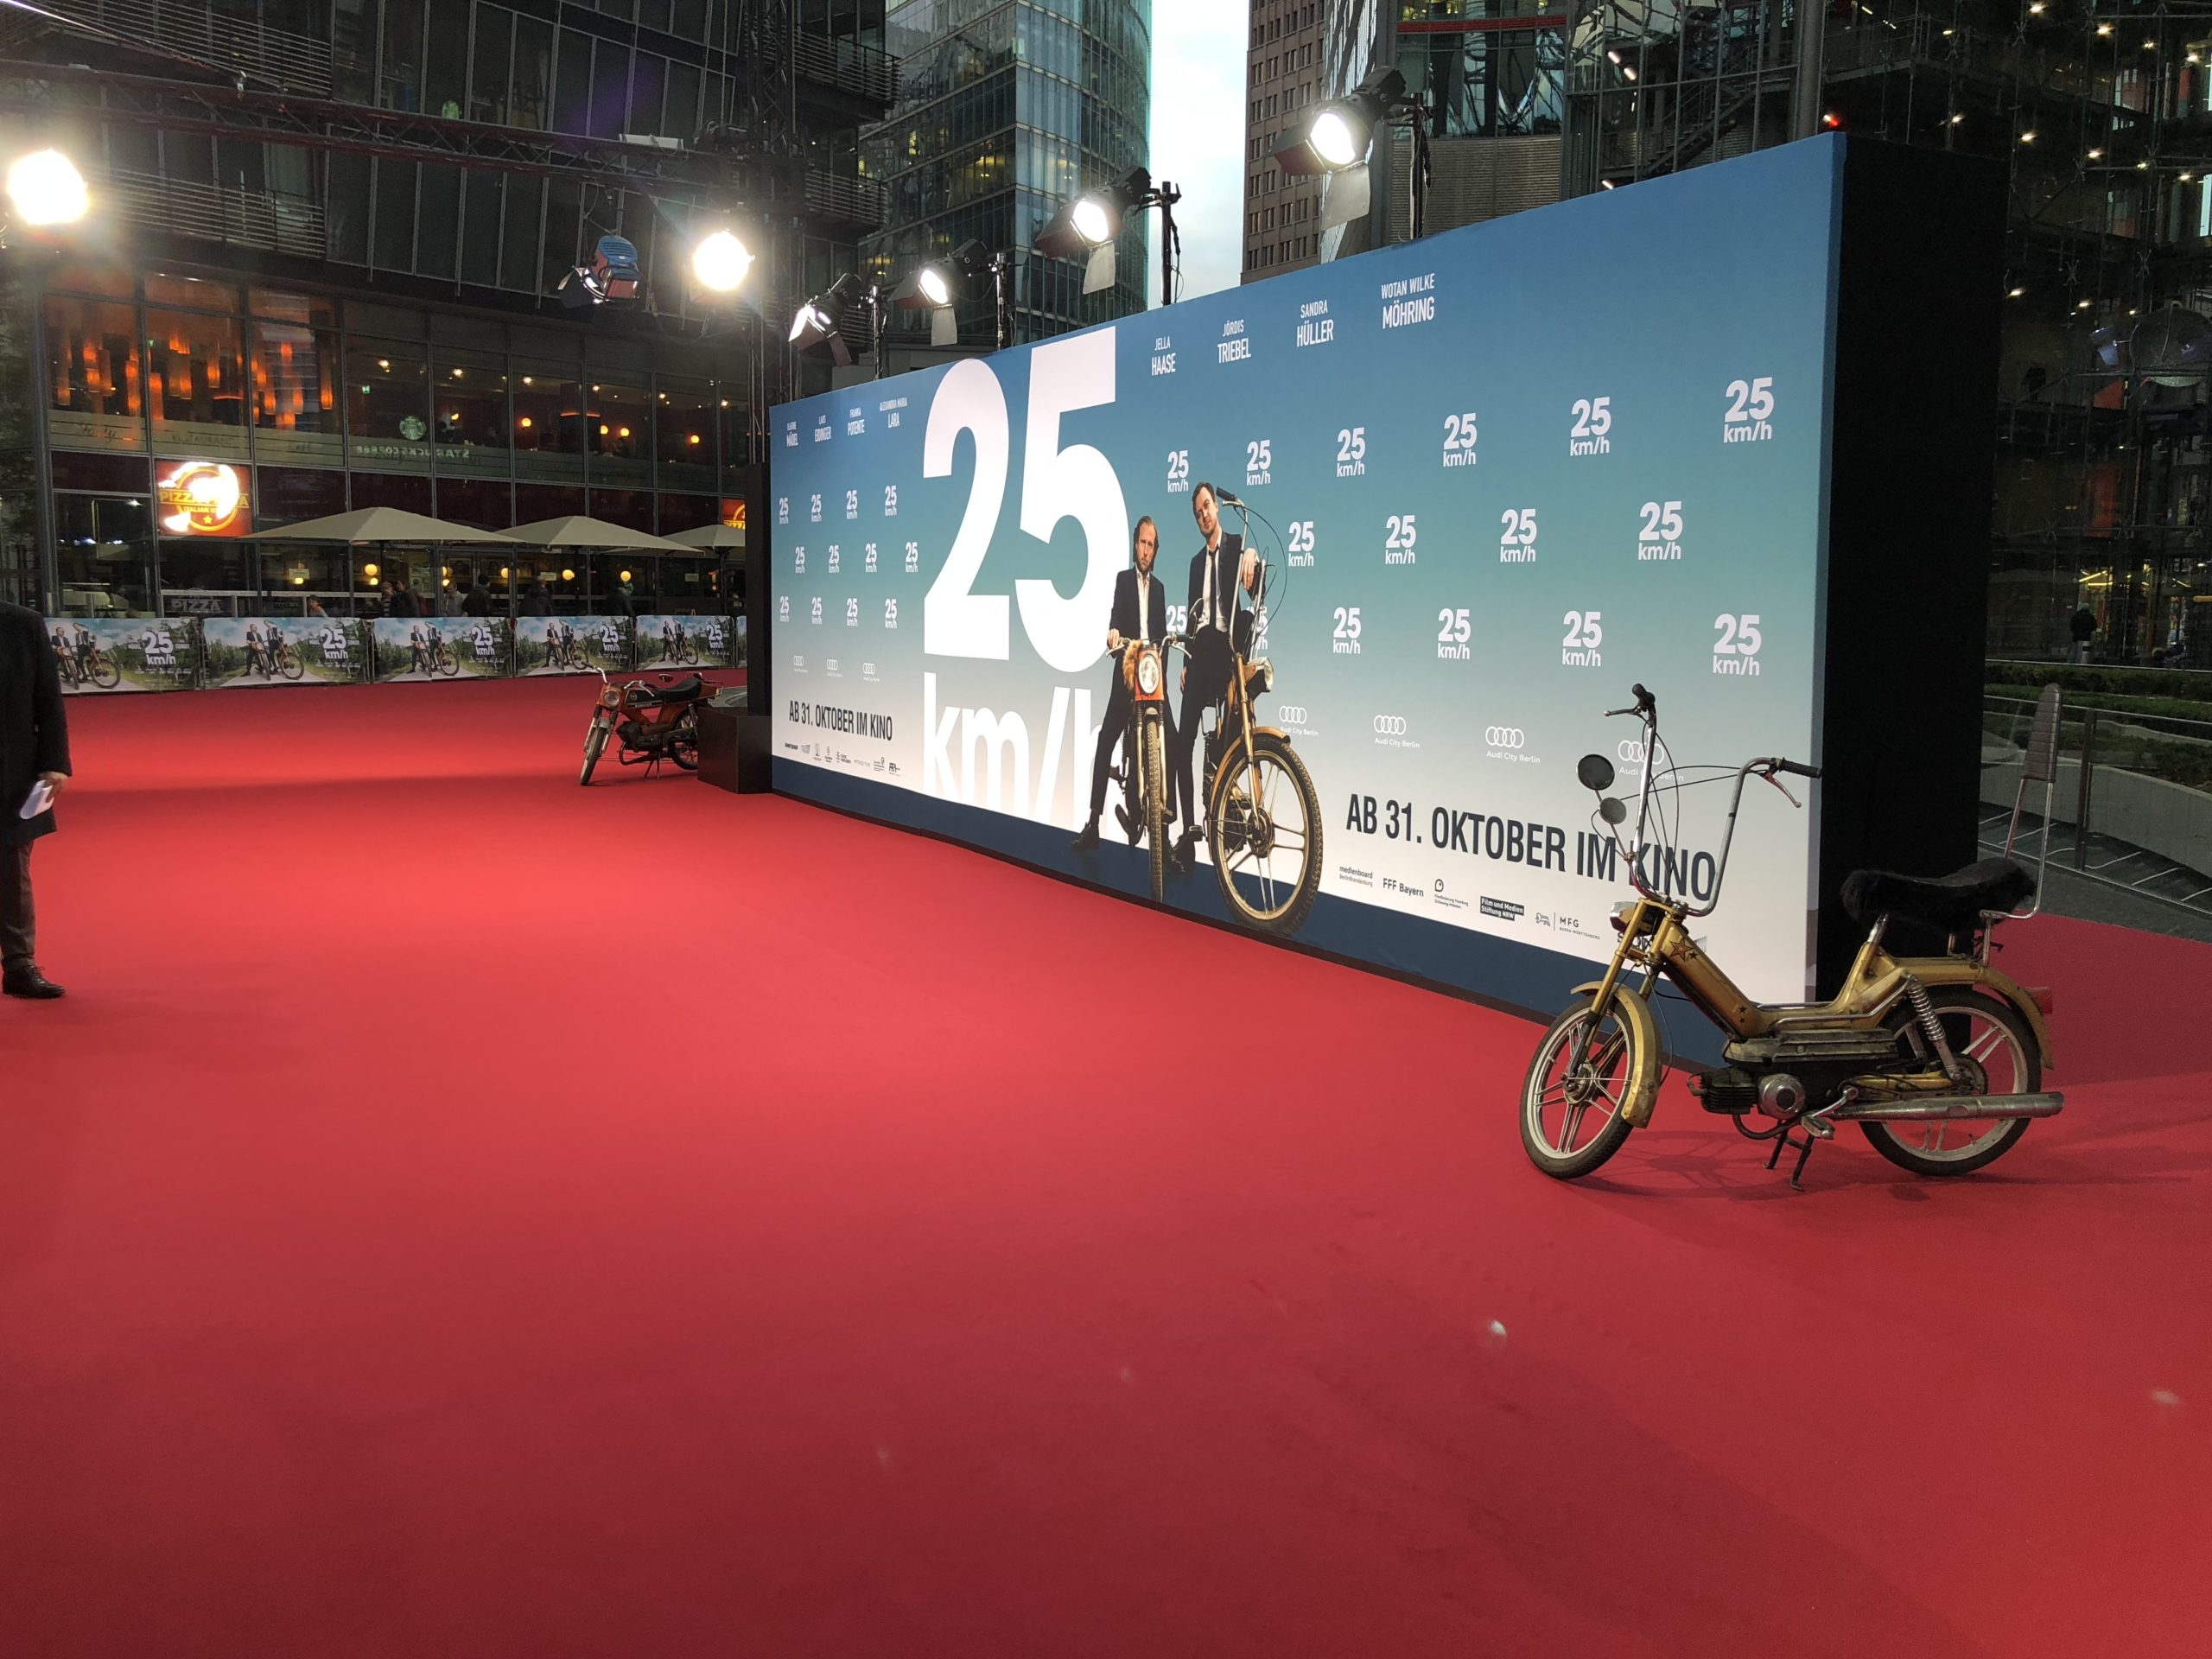 Foto vom Bodenbelag Nadelvlies-eco Teppich für Filmpremiere 25 km/h Sony Center Berlin 2018